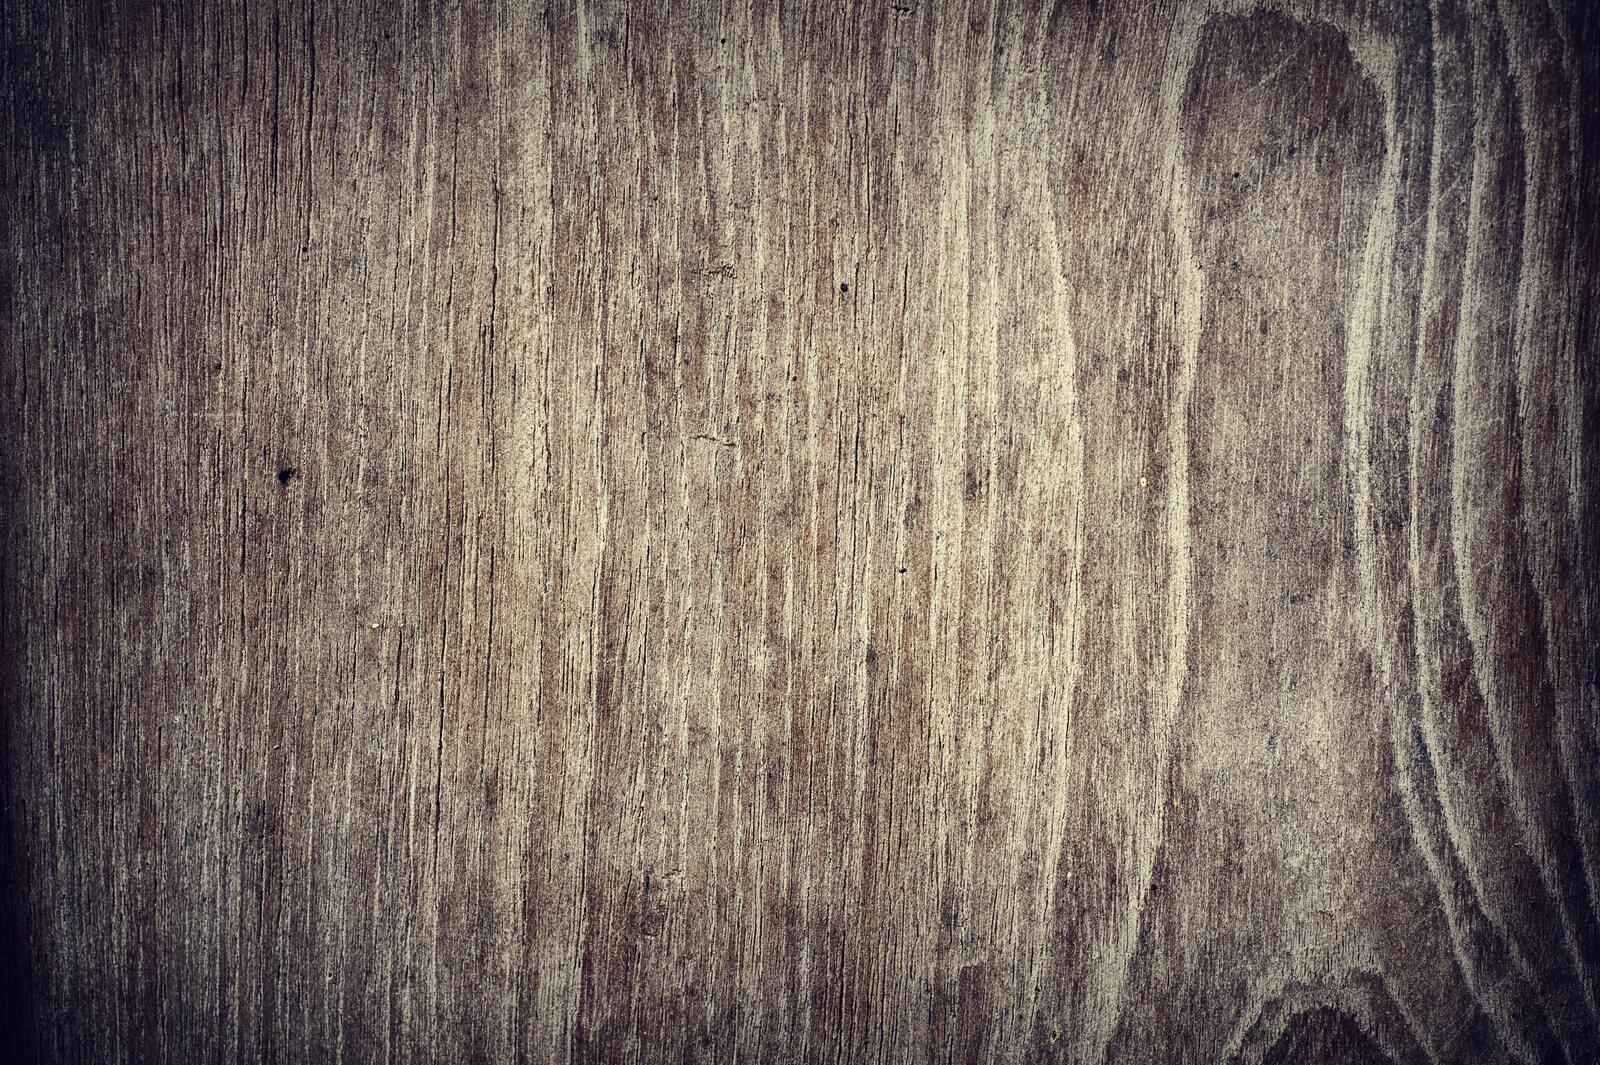 Wallpapers tree board wood on the desktop